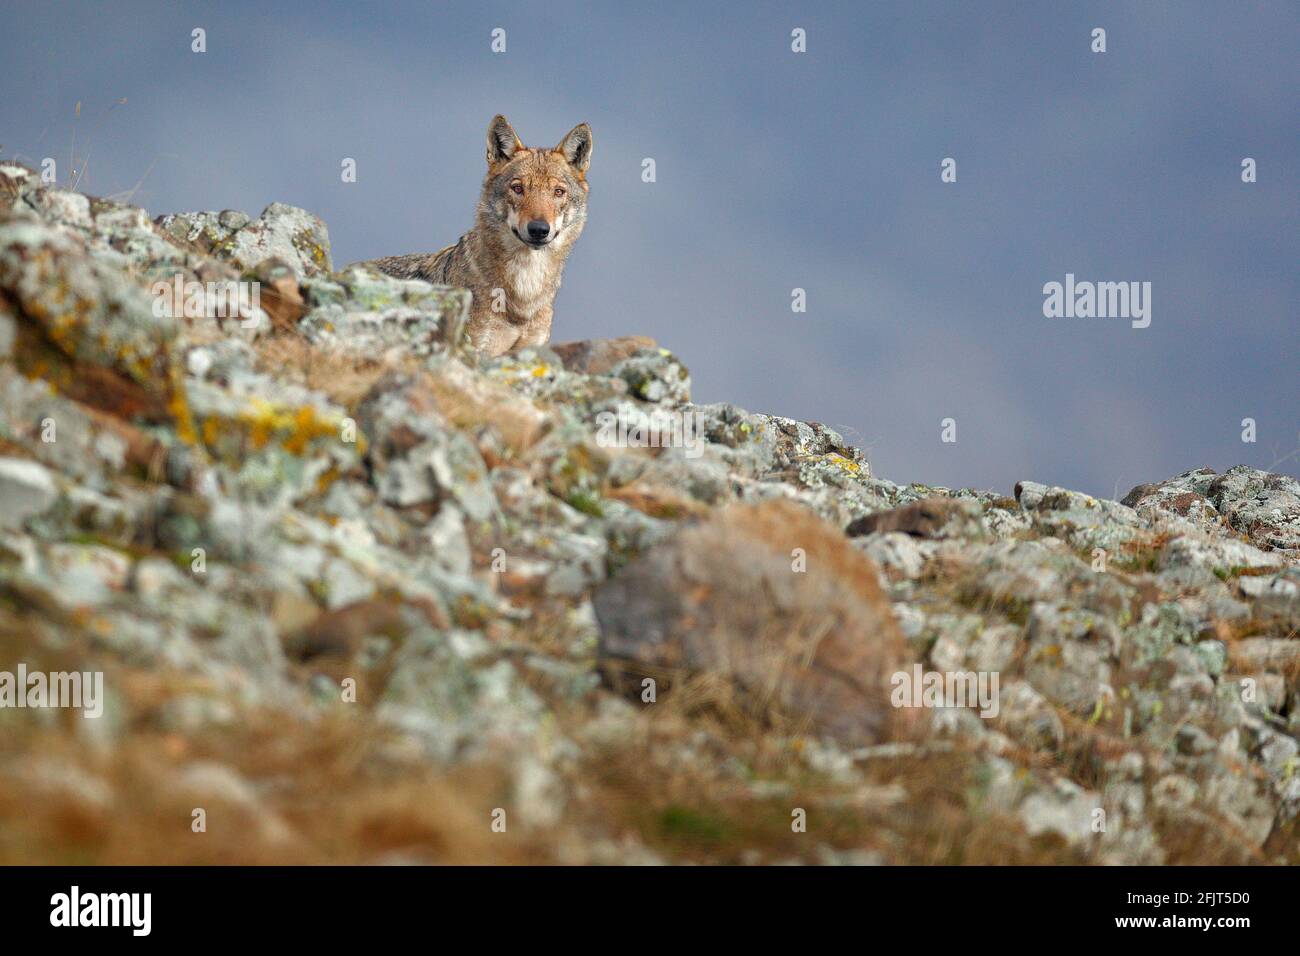 Lupo selvatico, lupo Canis, nell'habitat naturale. Bellissimo animale in collina di pietra, nascosto nella roccia, Rhodopes montagna Bulgaria. Scena faunistica da nat Foto Stock